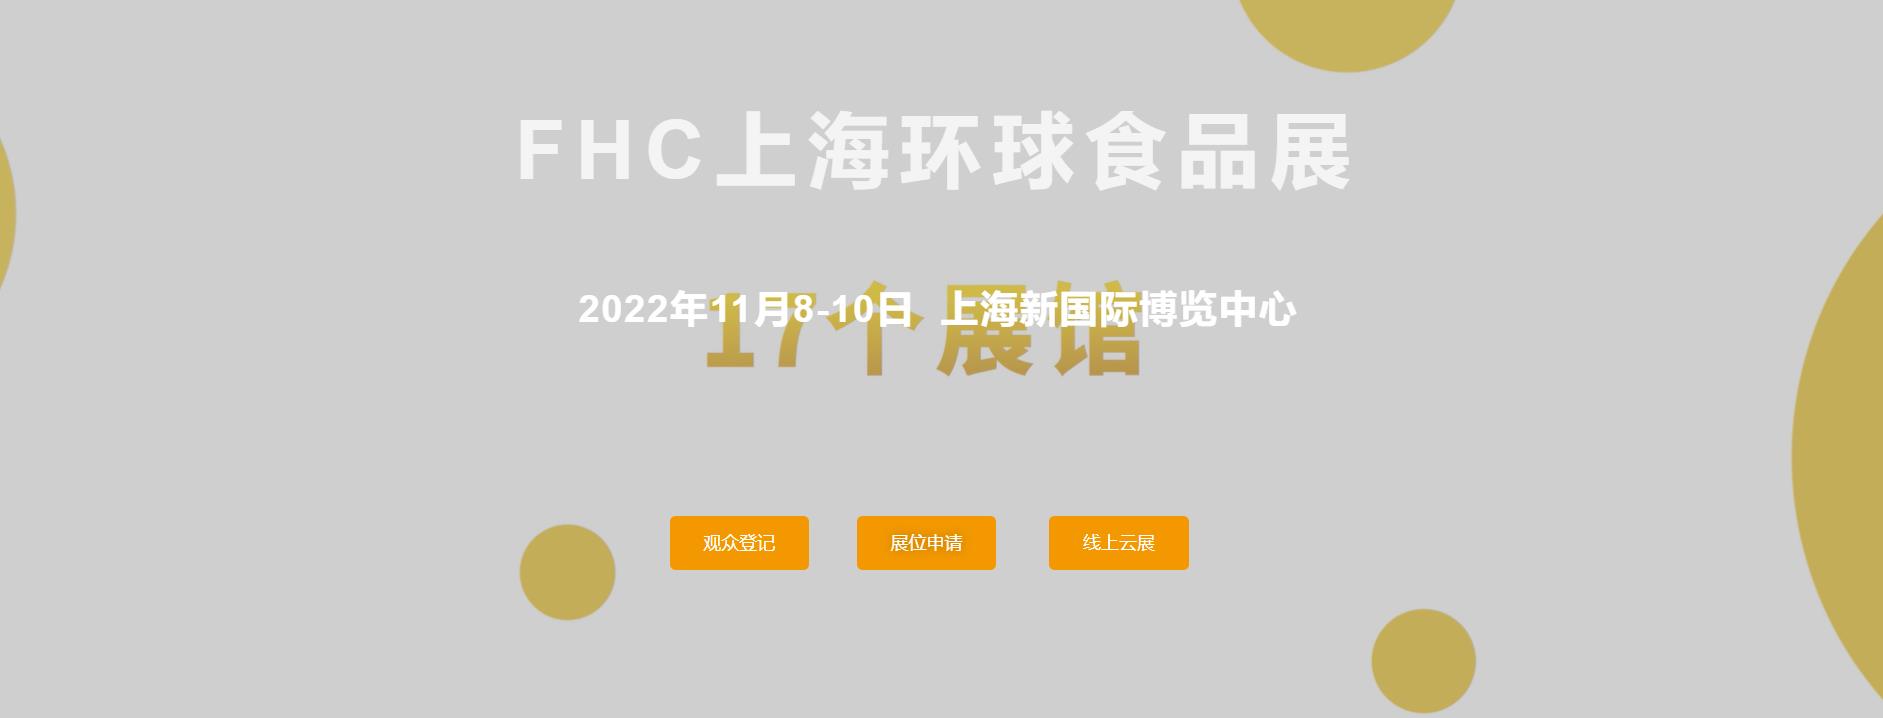 2022上海食品饮料餐饮展览会展位申请 摊位预定表